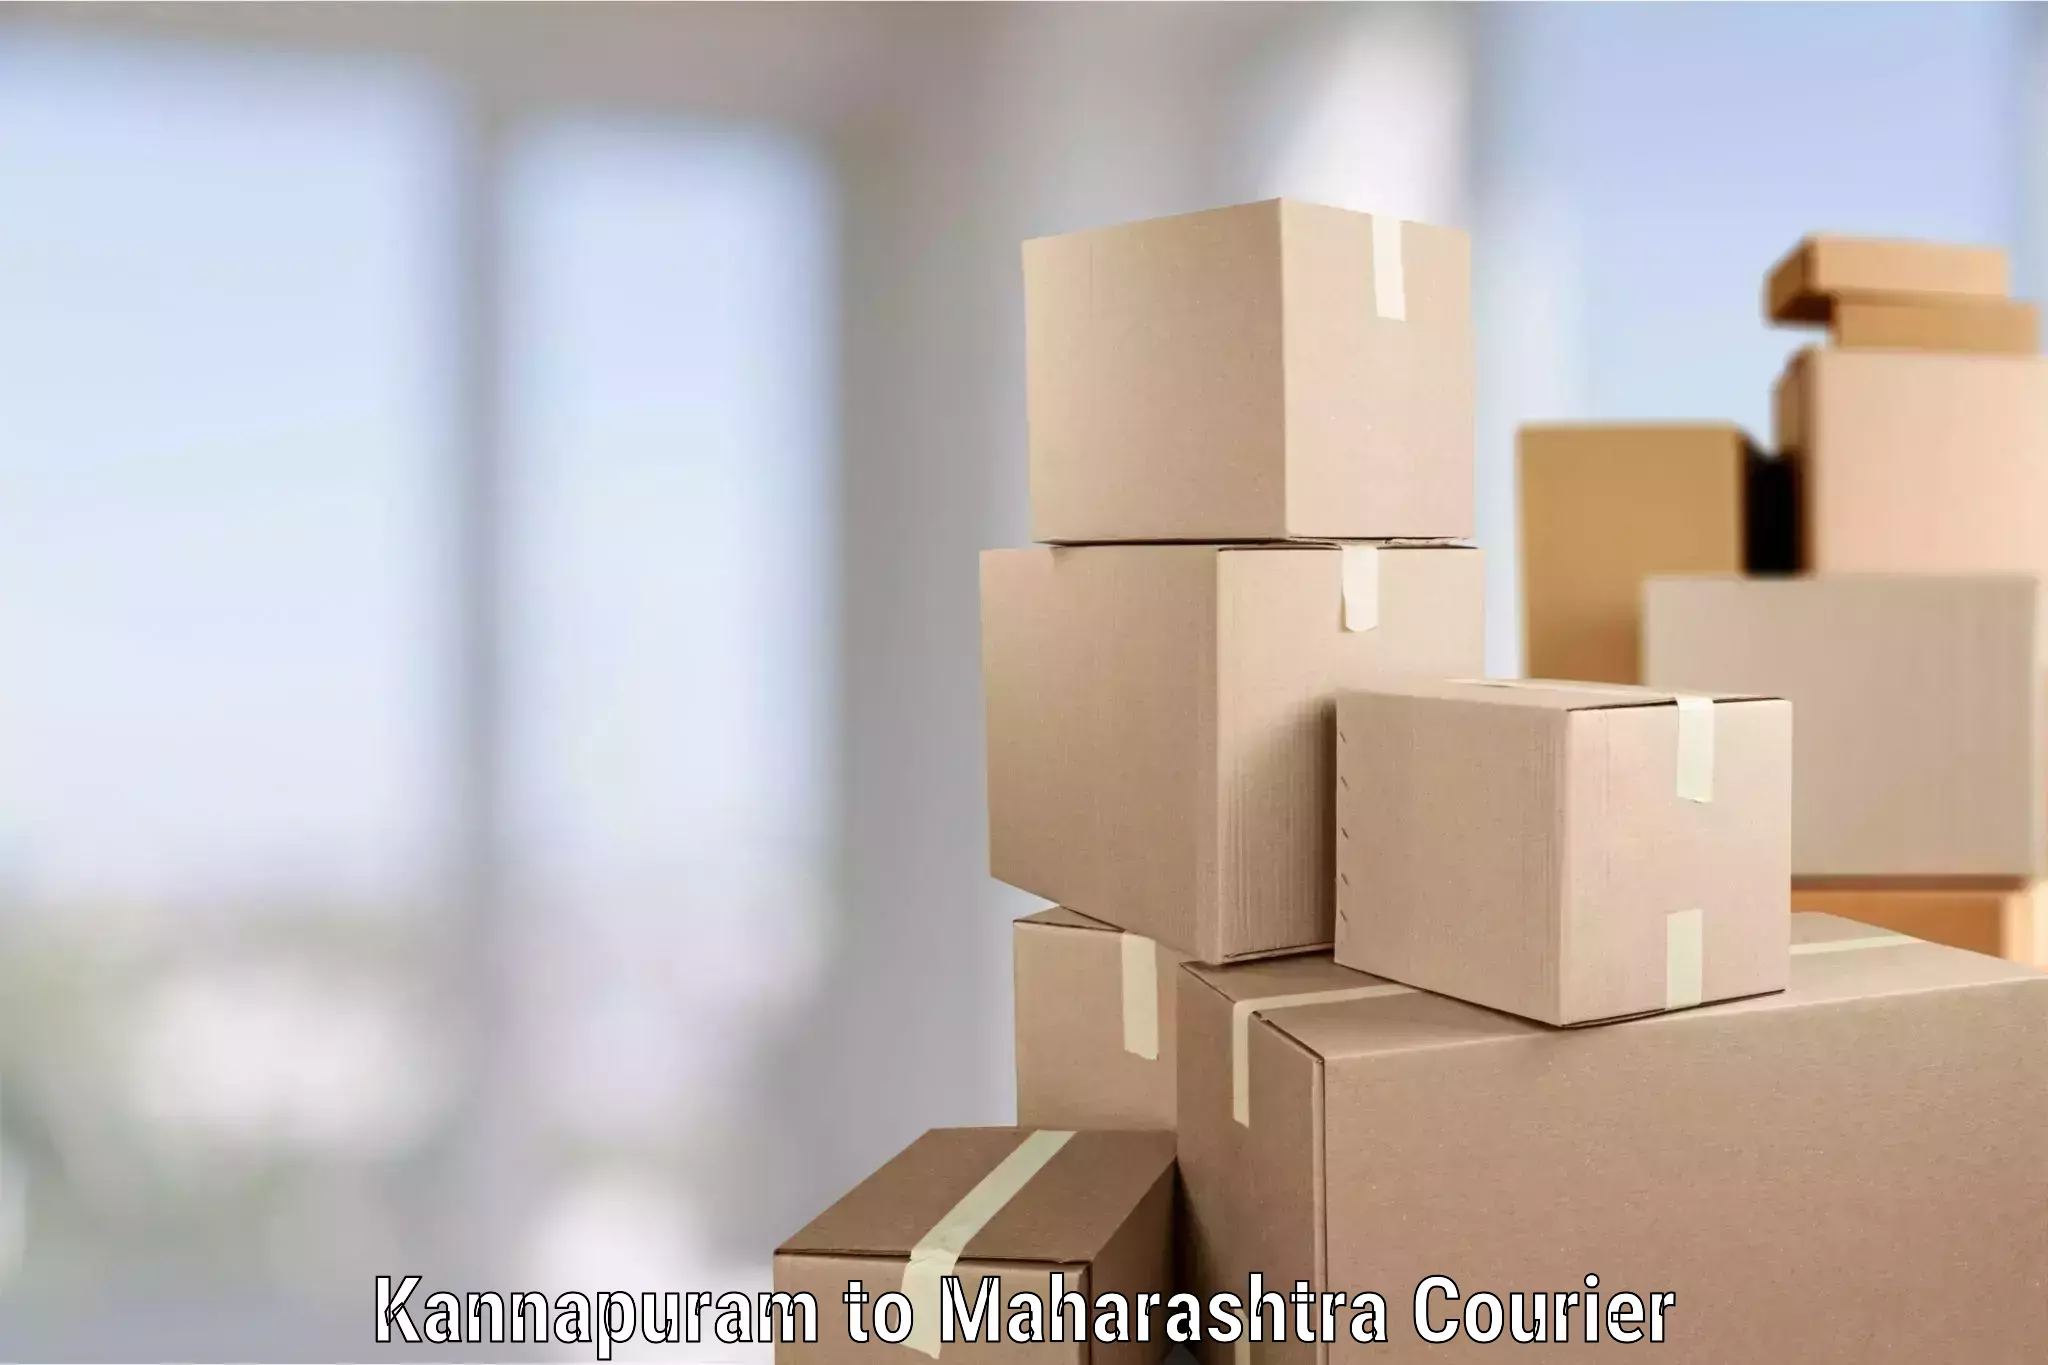 Reliable movers Kannapuram to Maharashtra